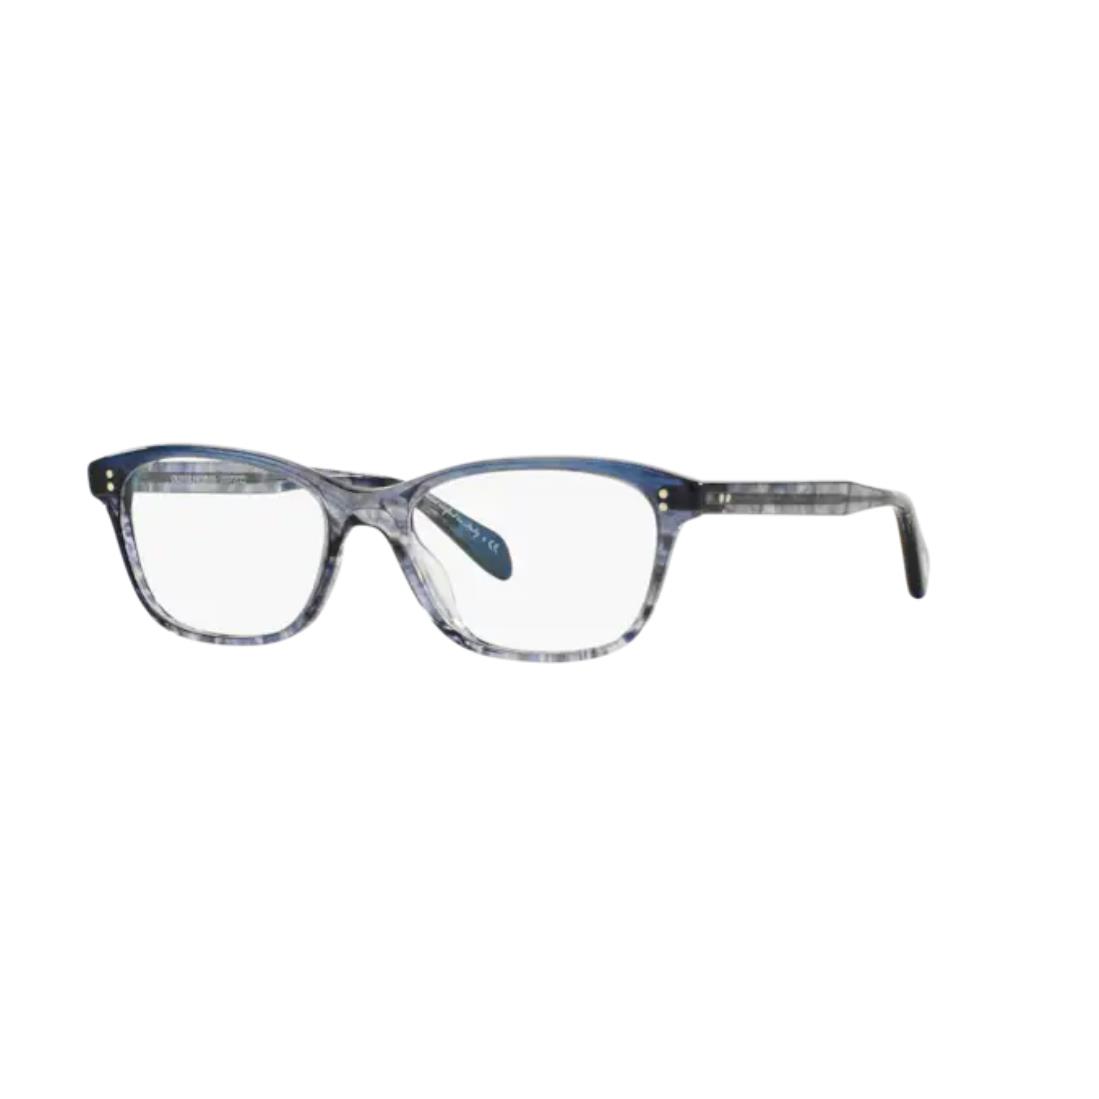 Oliver Peoples 0OV 5224 Ashton 1419 Faded Sea Blue Eyeglasses